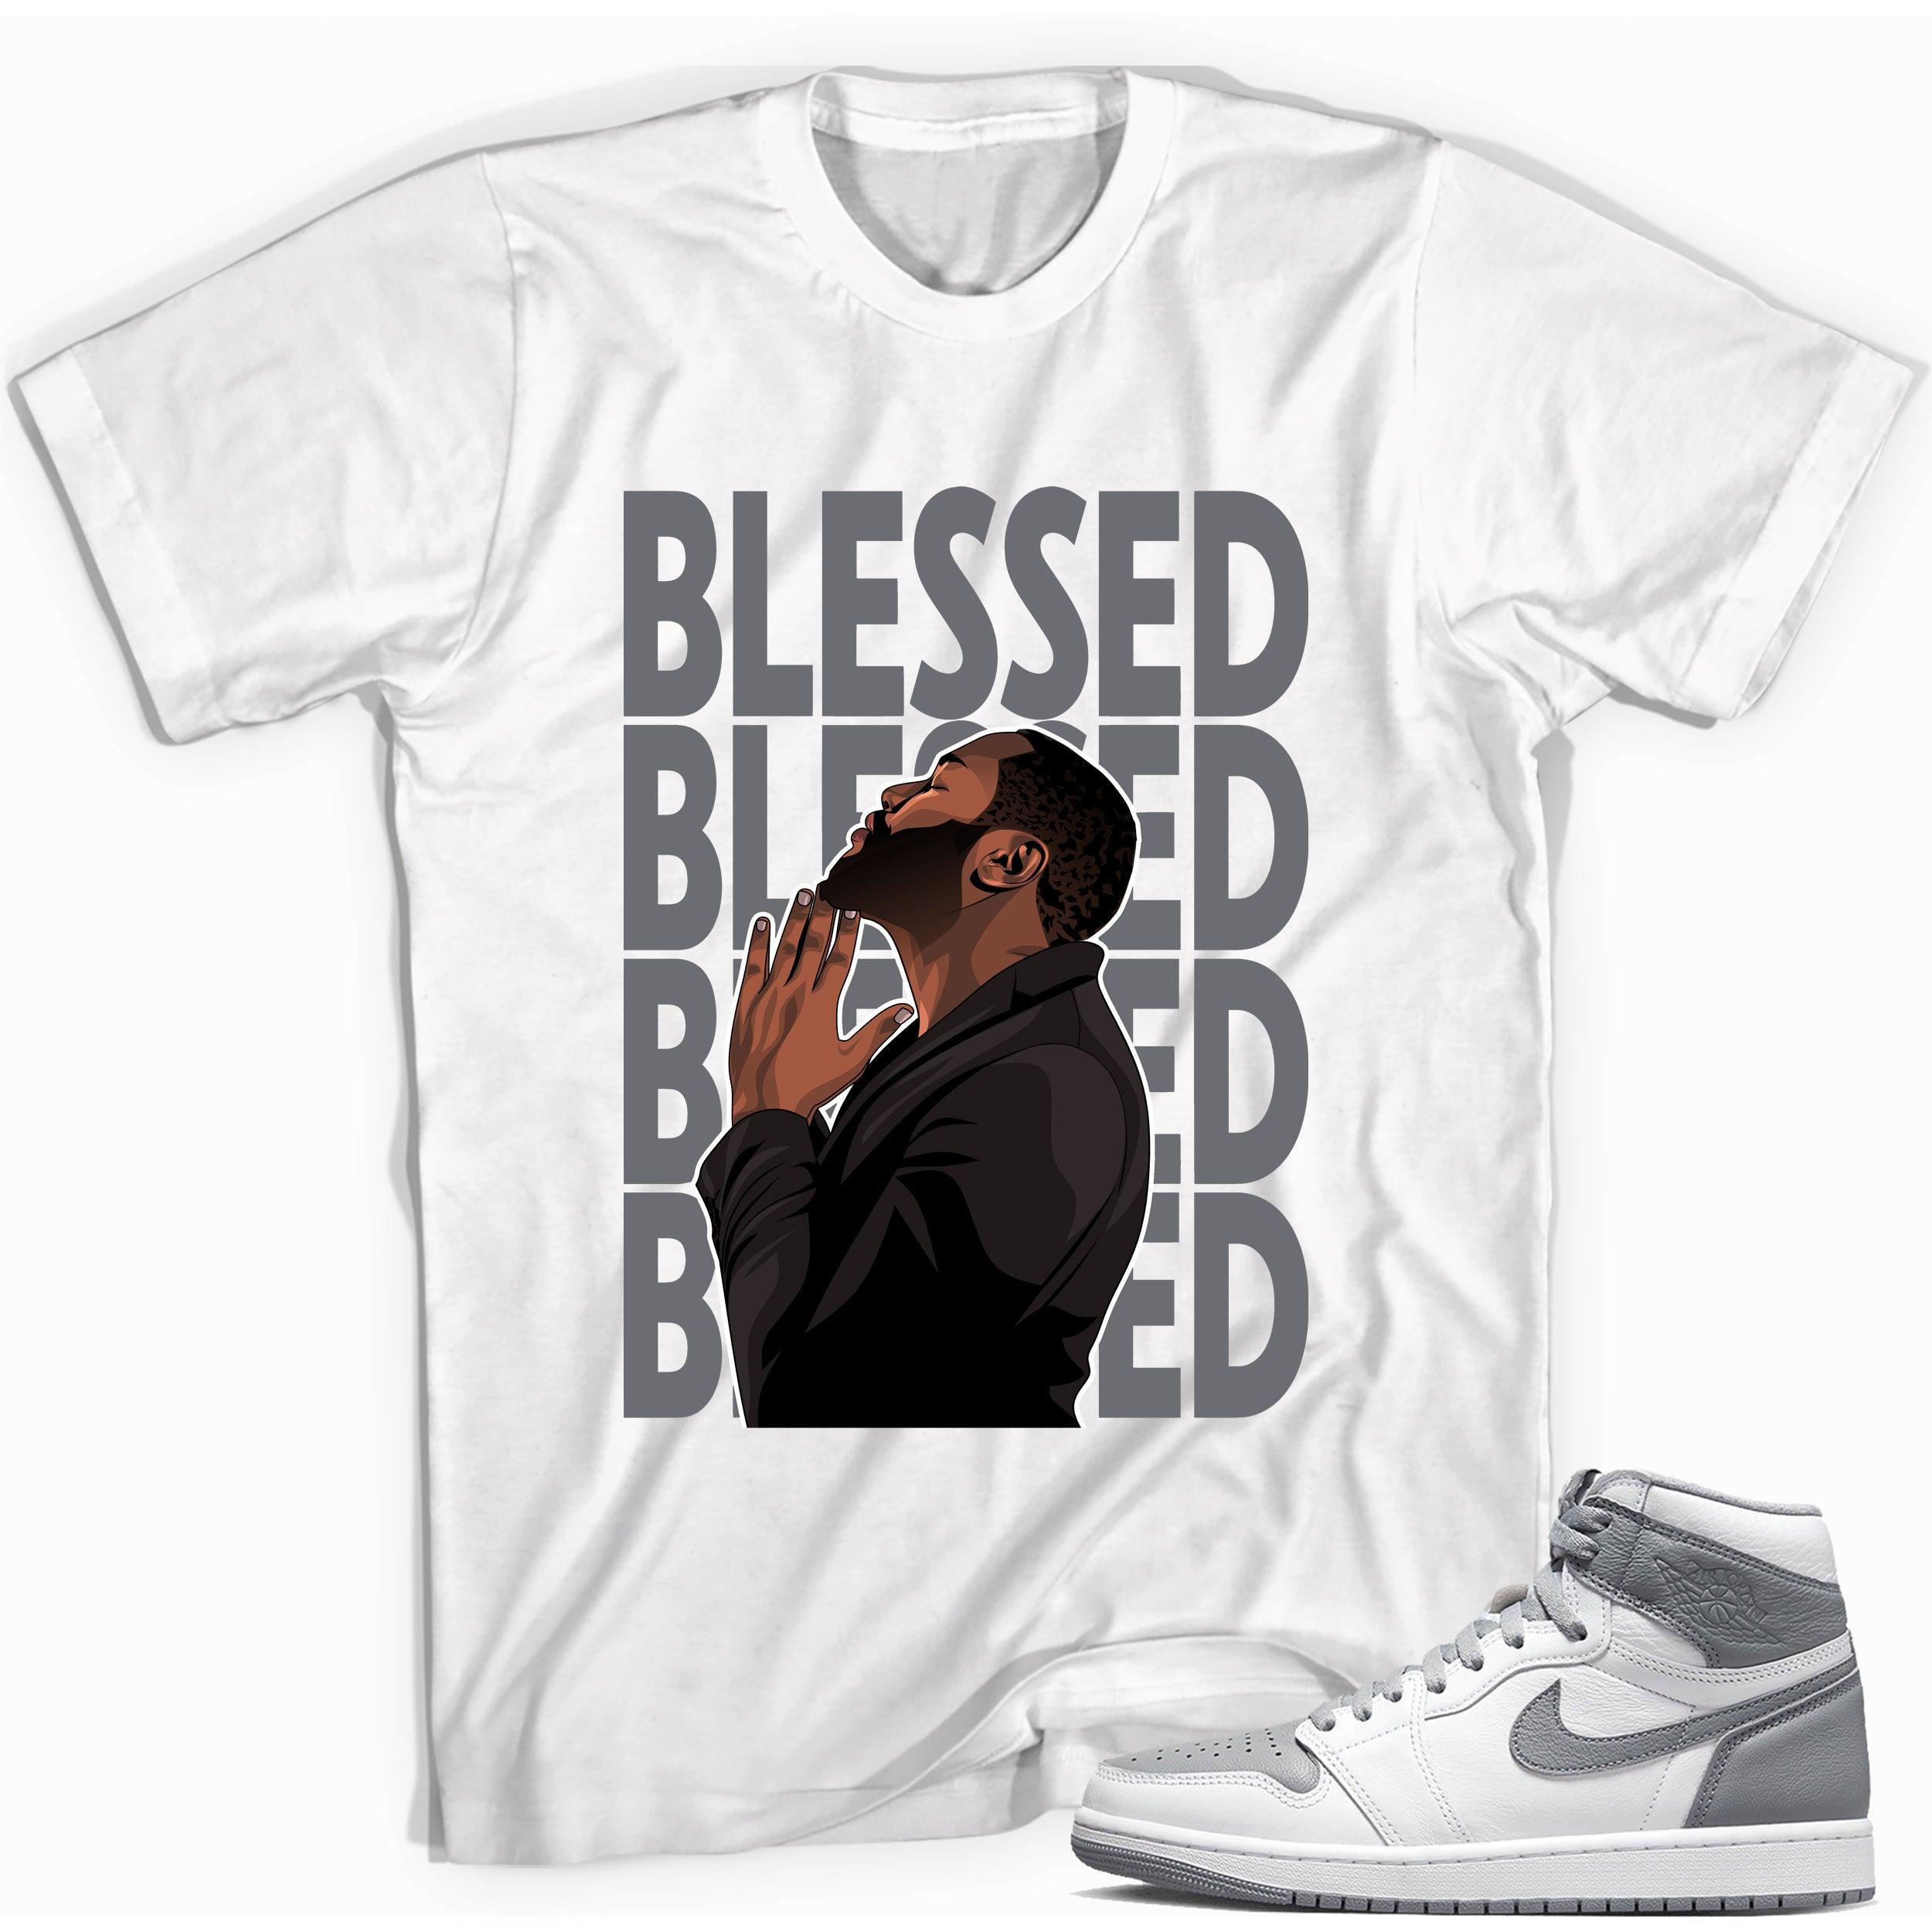 God Blessed Shirt for Jordan 1s photo